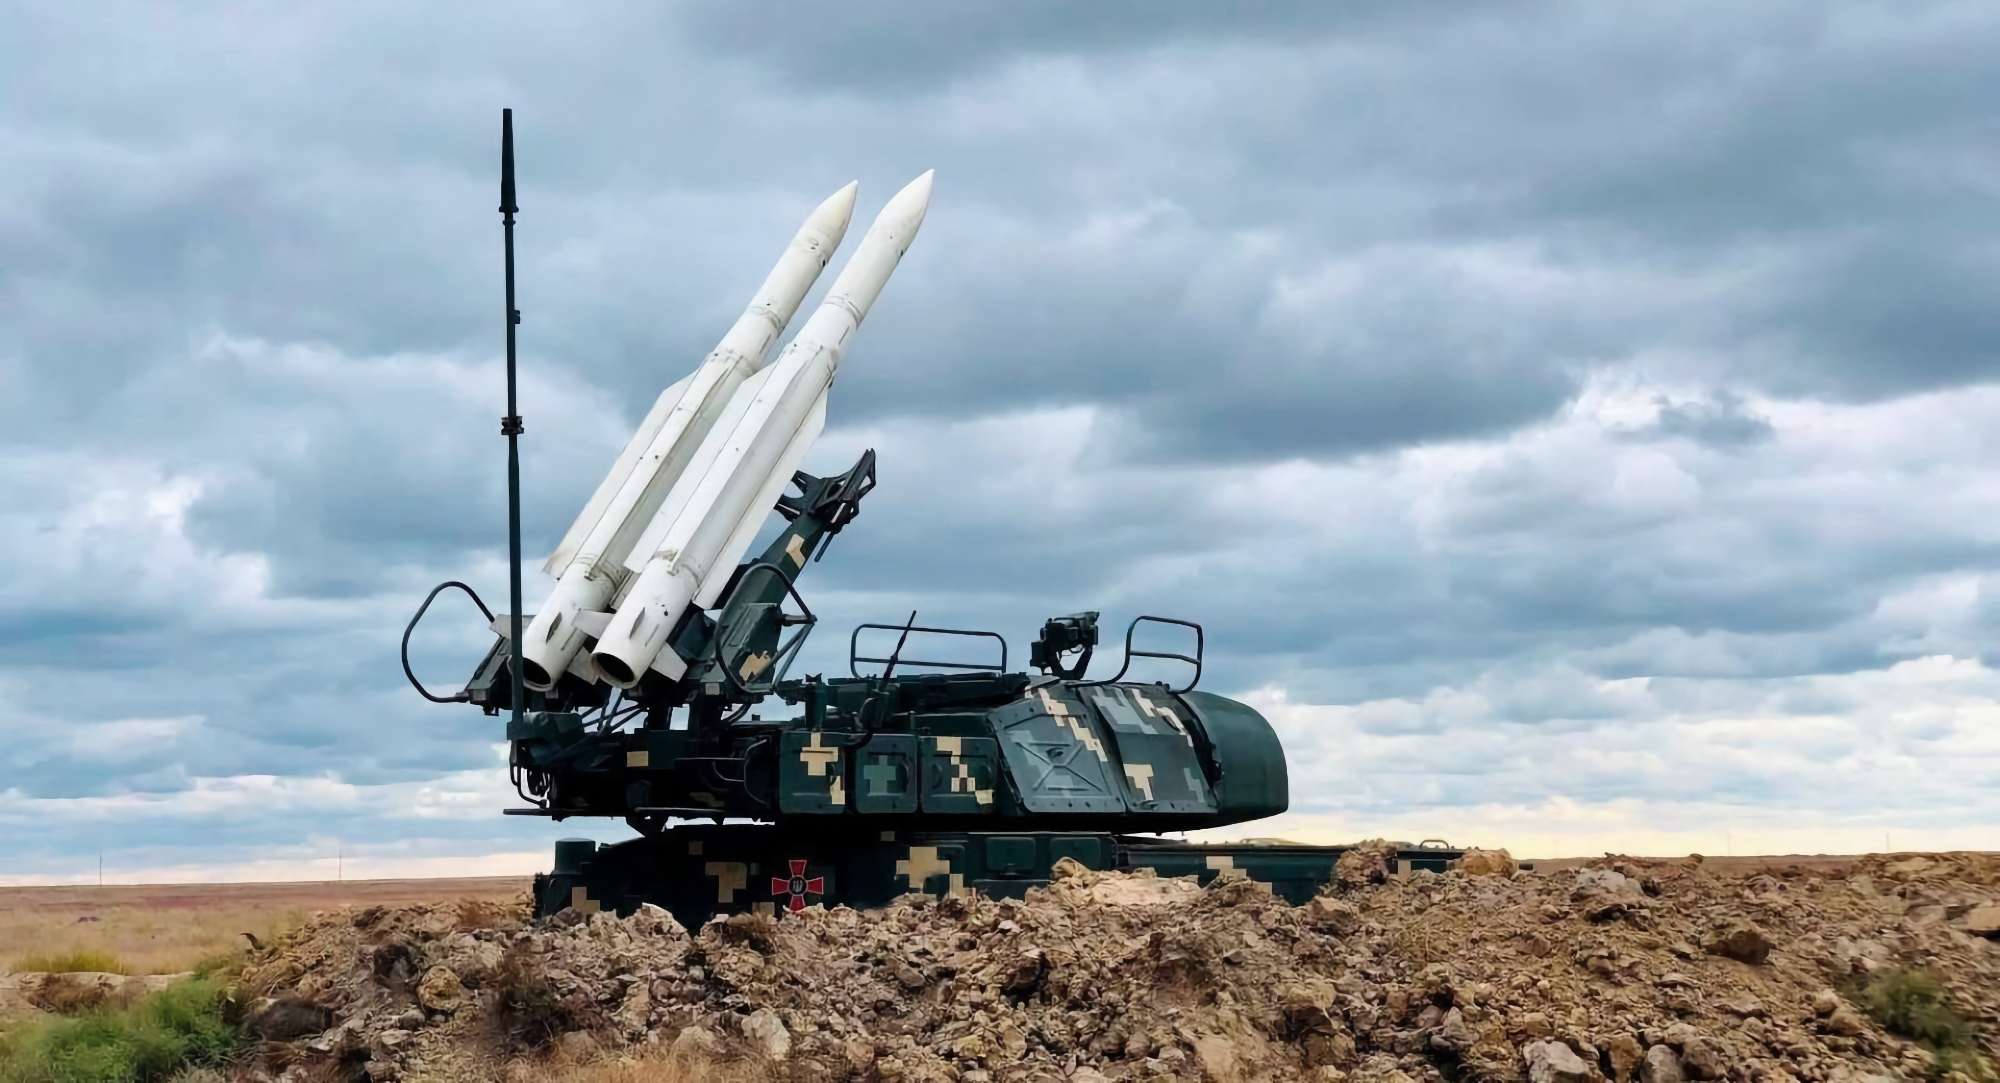 Officiellt: USA anpassar ukrainska Buk-M1 SAM för avfyrning av RIM-7 Sea Sparrow-missiler